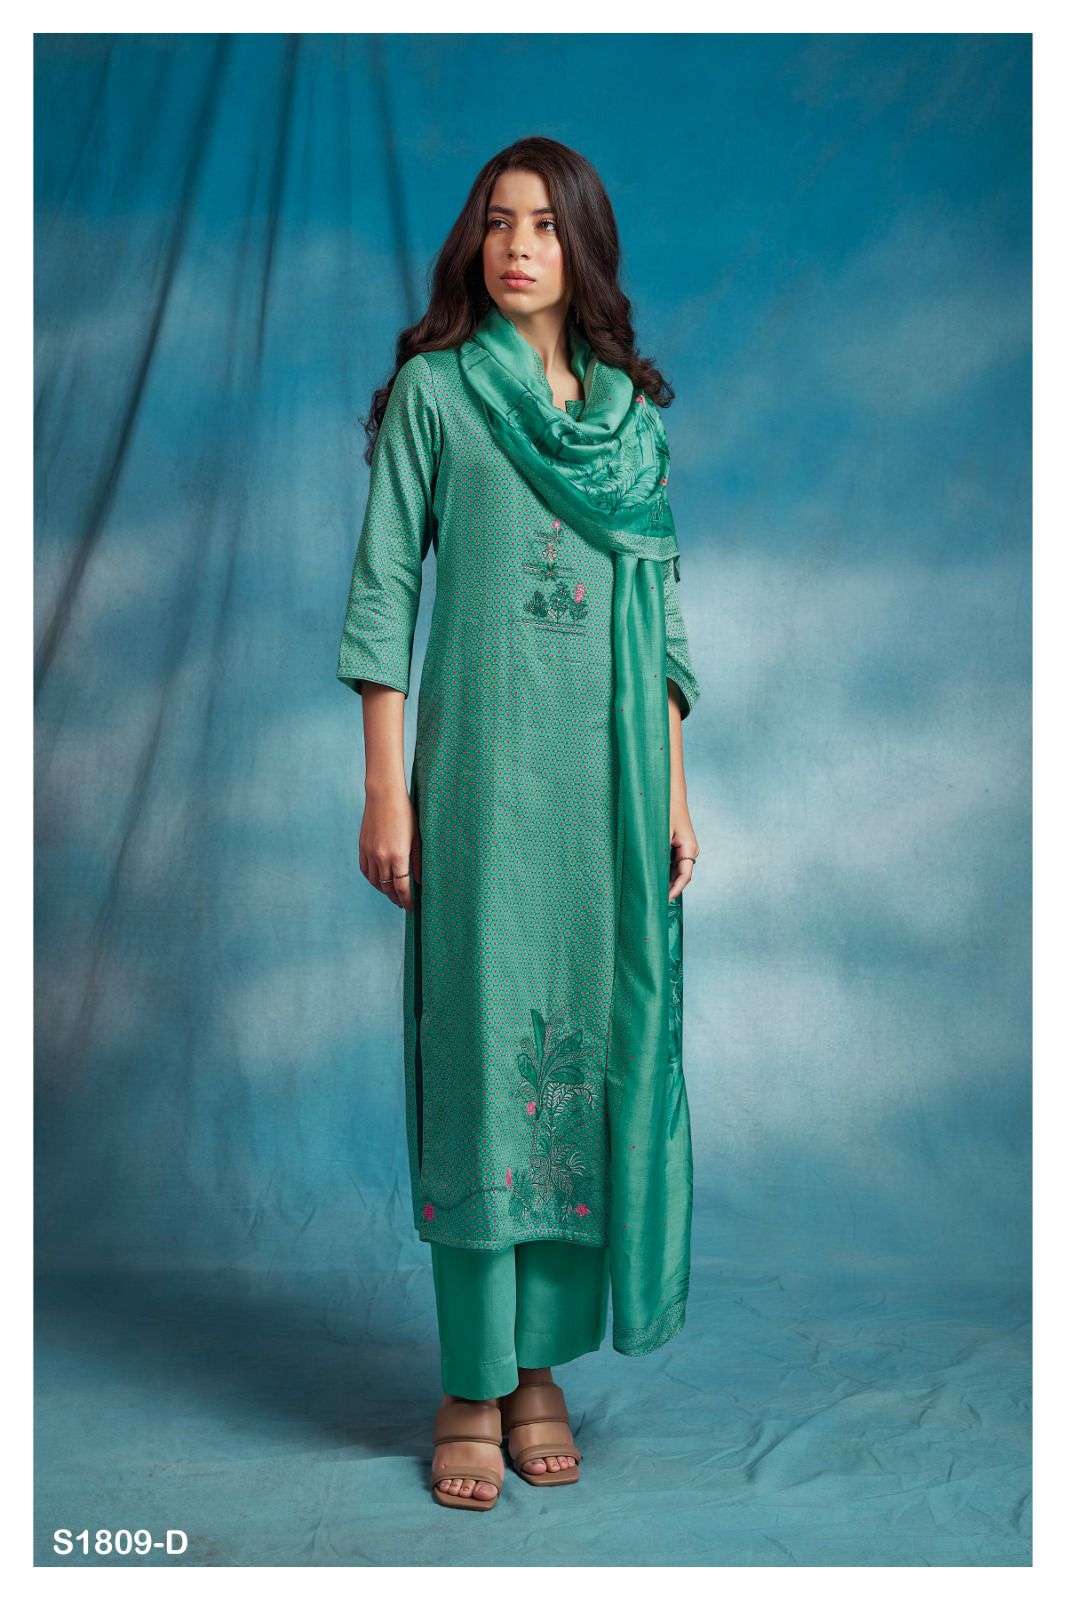 ganga hemal 1809 series premium cotton silk designer salwar kameez catalogue wholeasle price surat